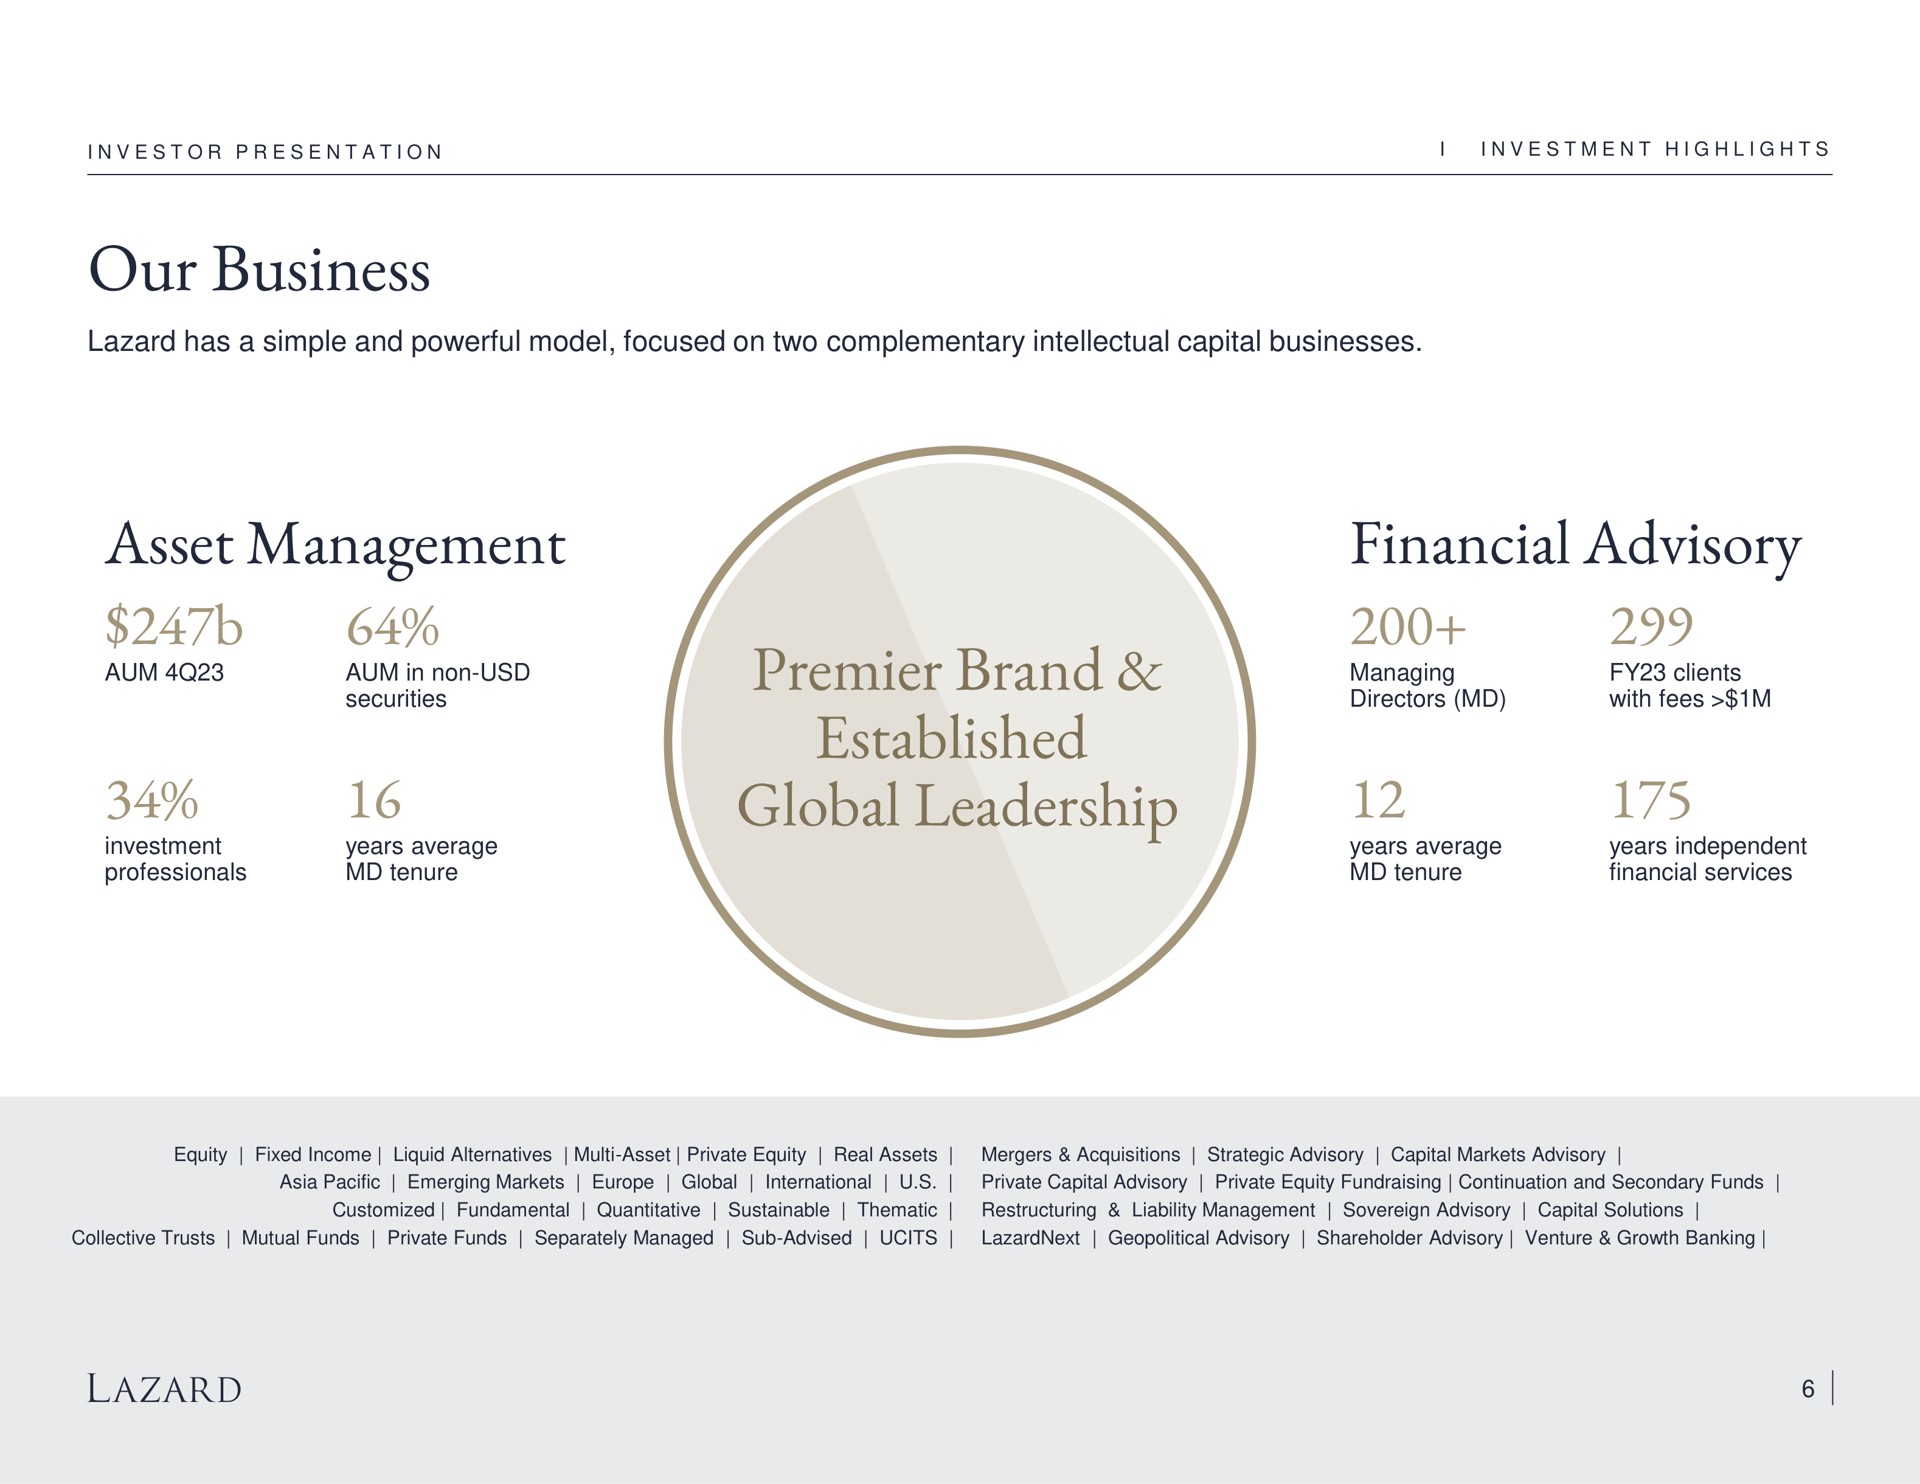 our business asset management premier brand established global leadership financial advisory | Lazard